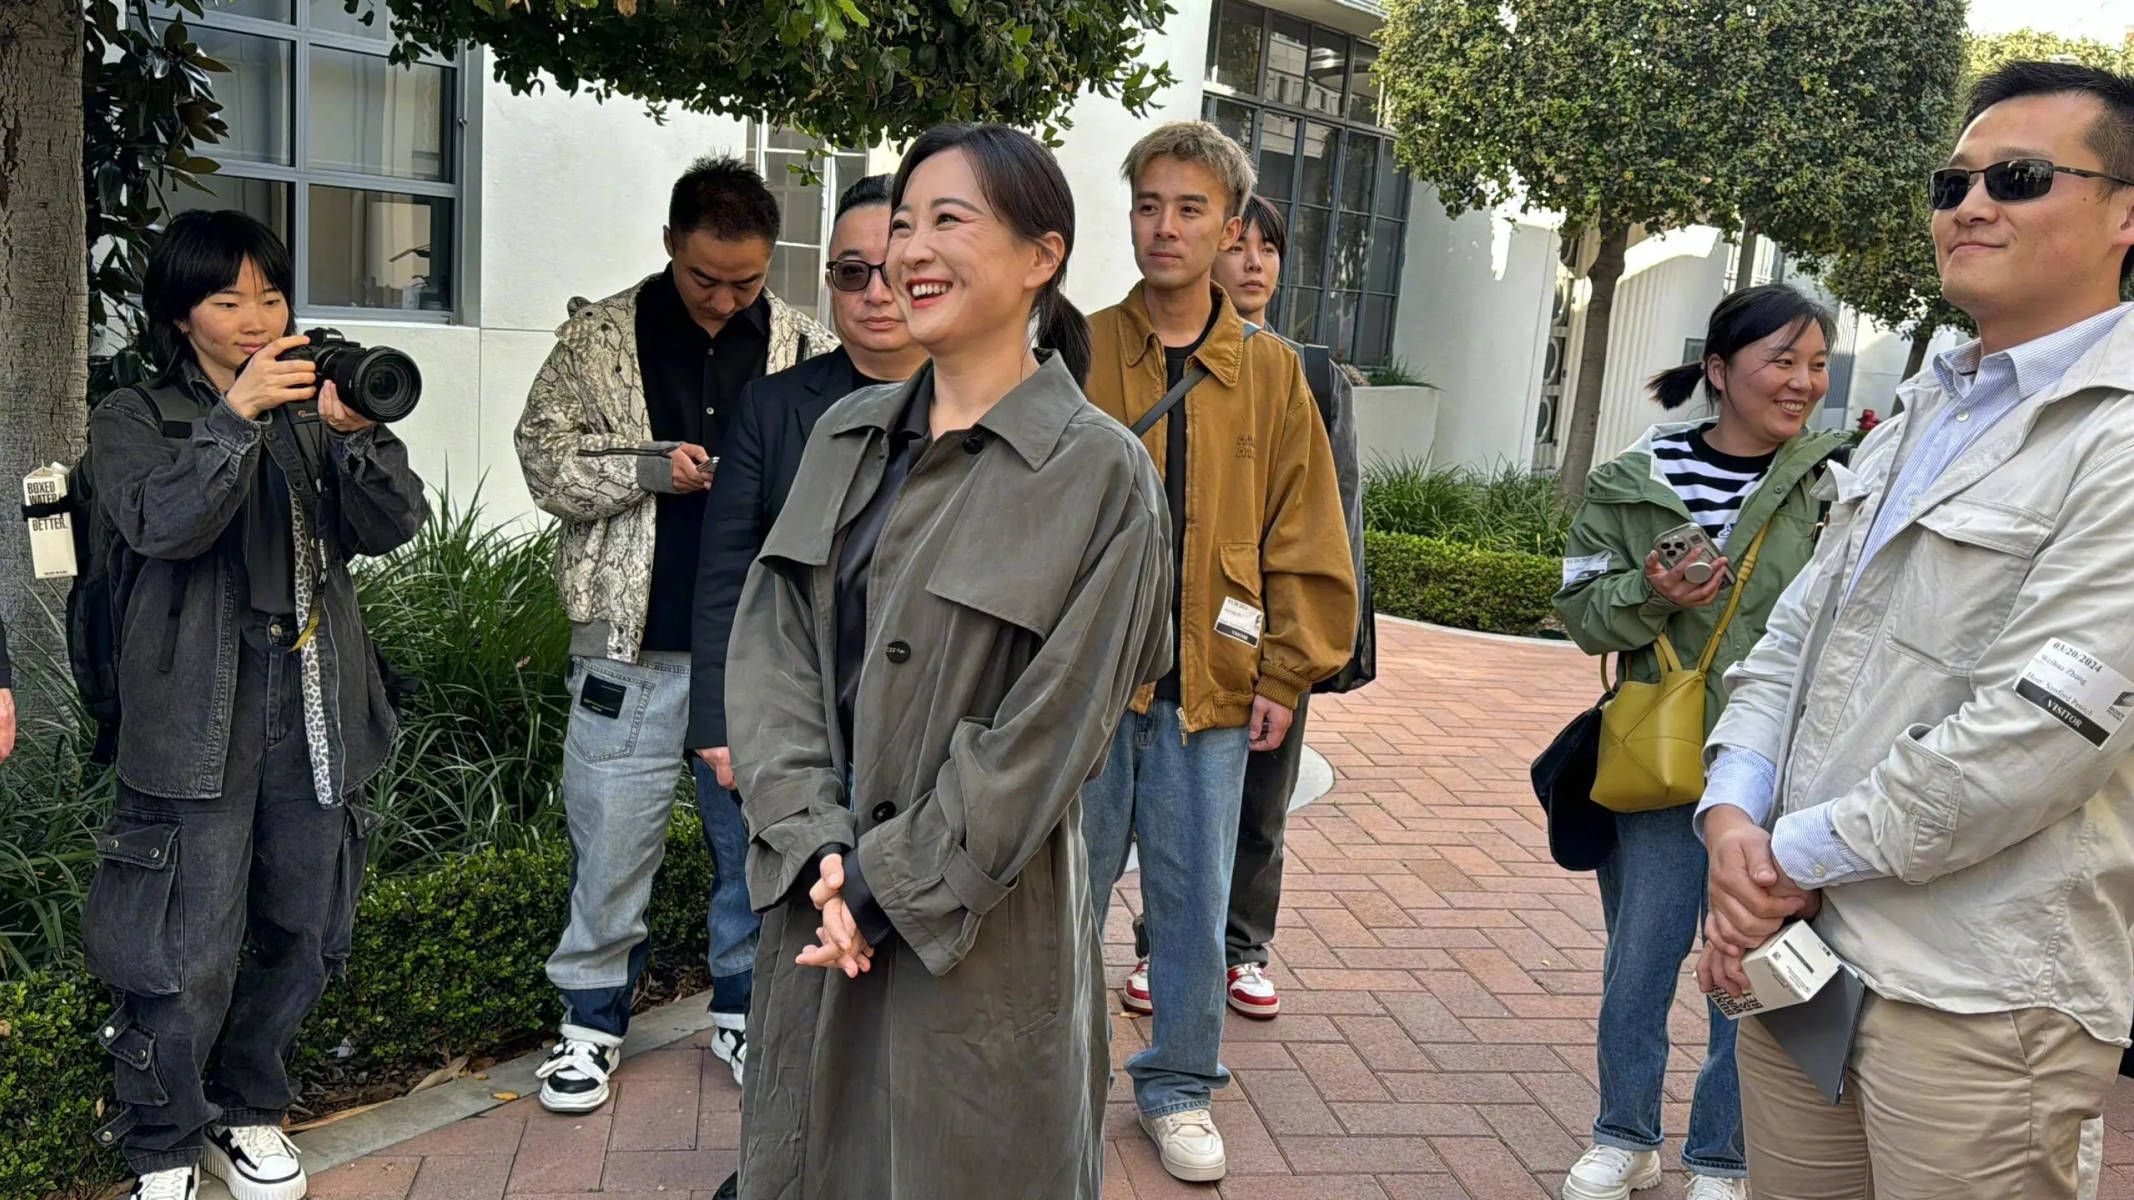 贾玲惊喜现身好莱坞索尼片场 穿灰色风衣潇洒率性  第2张